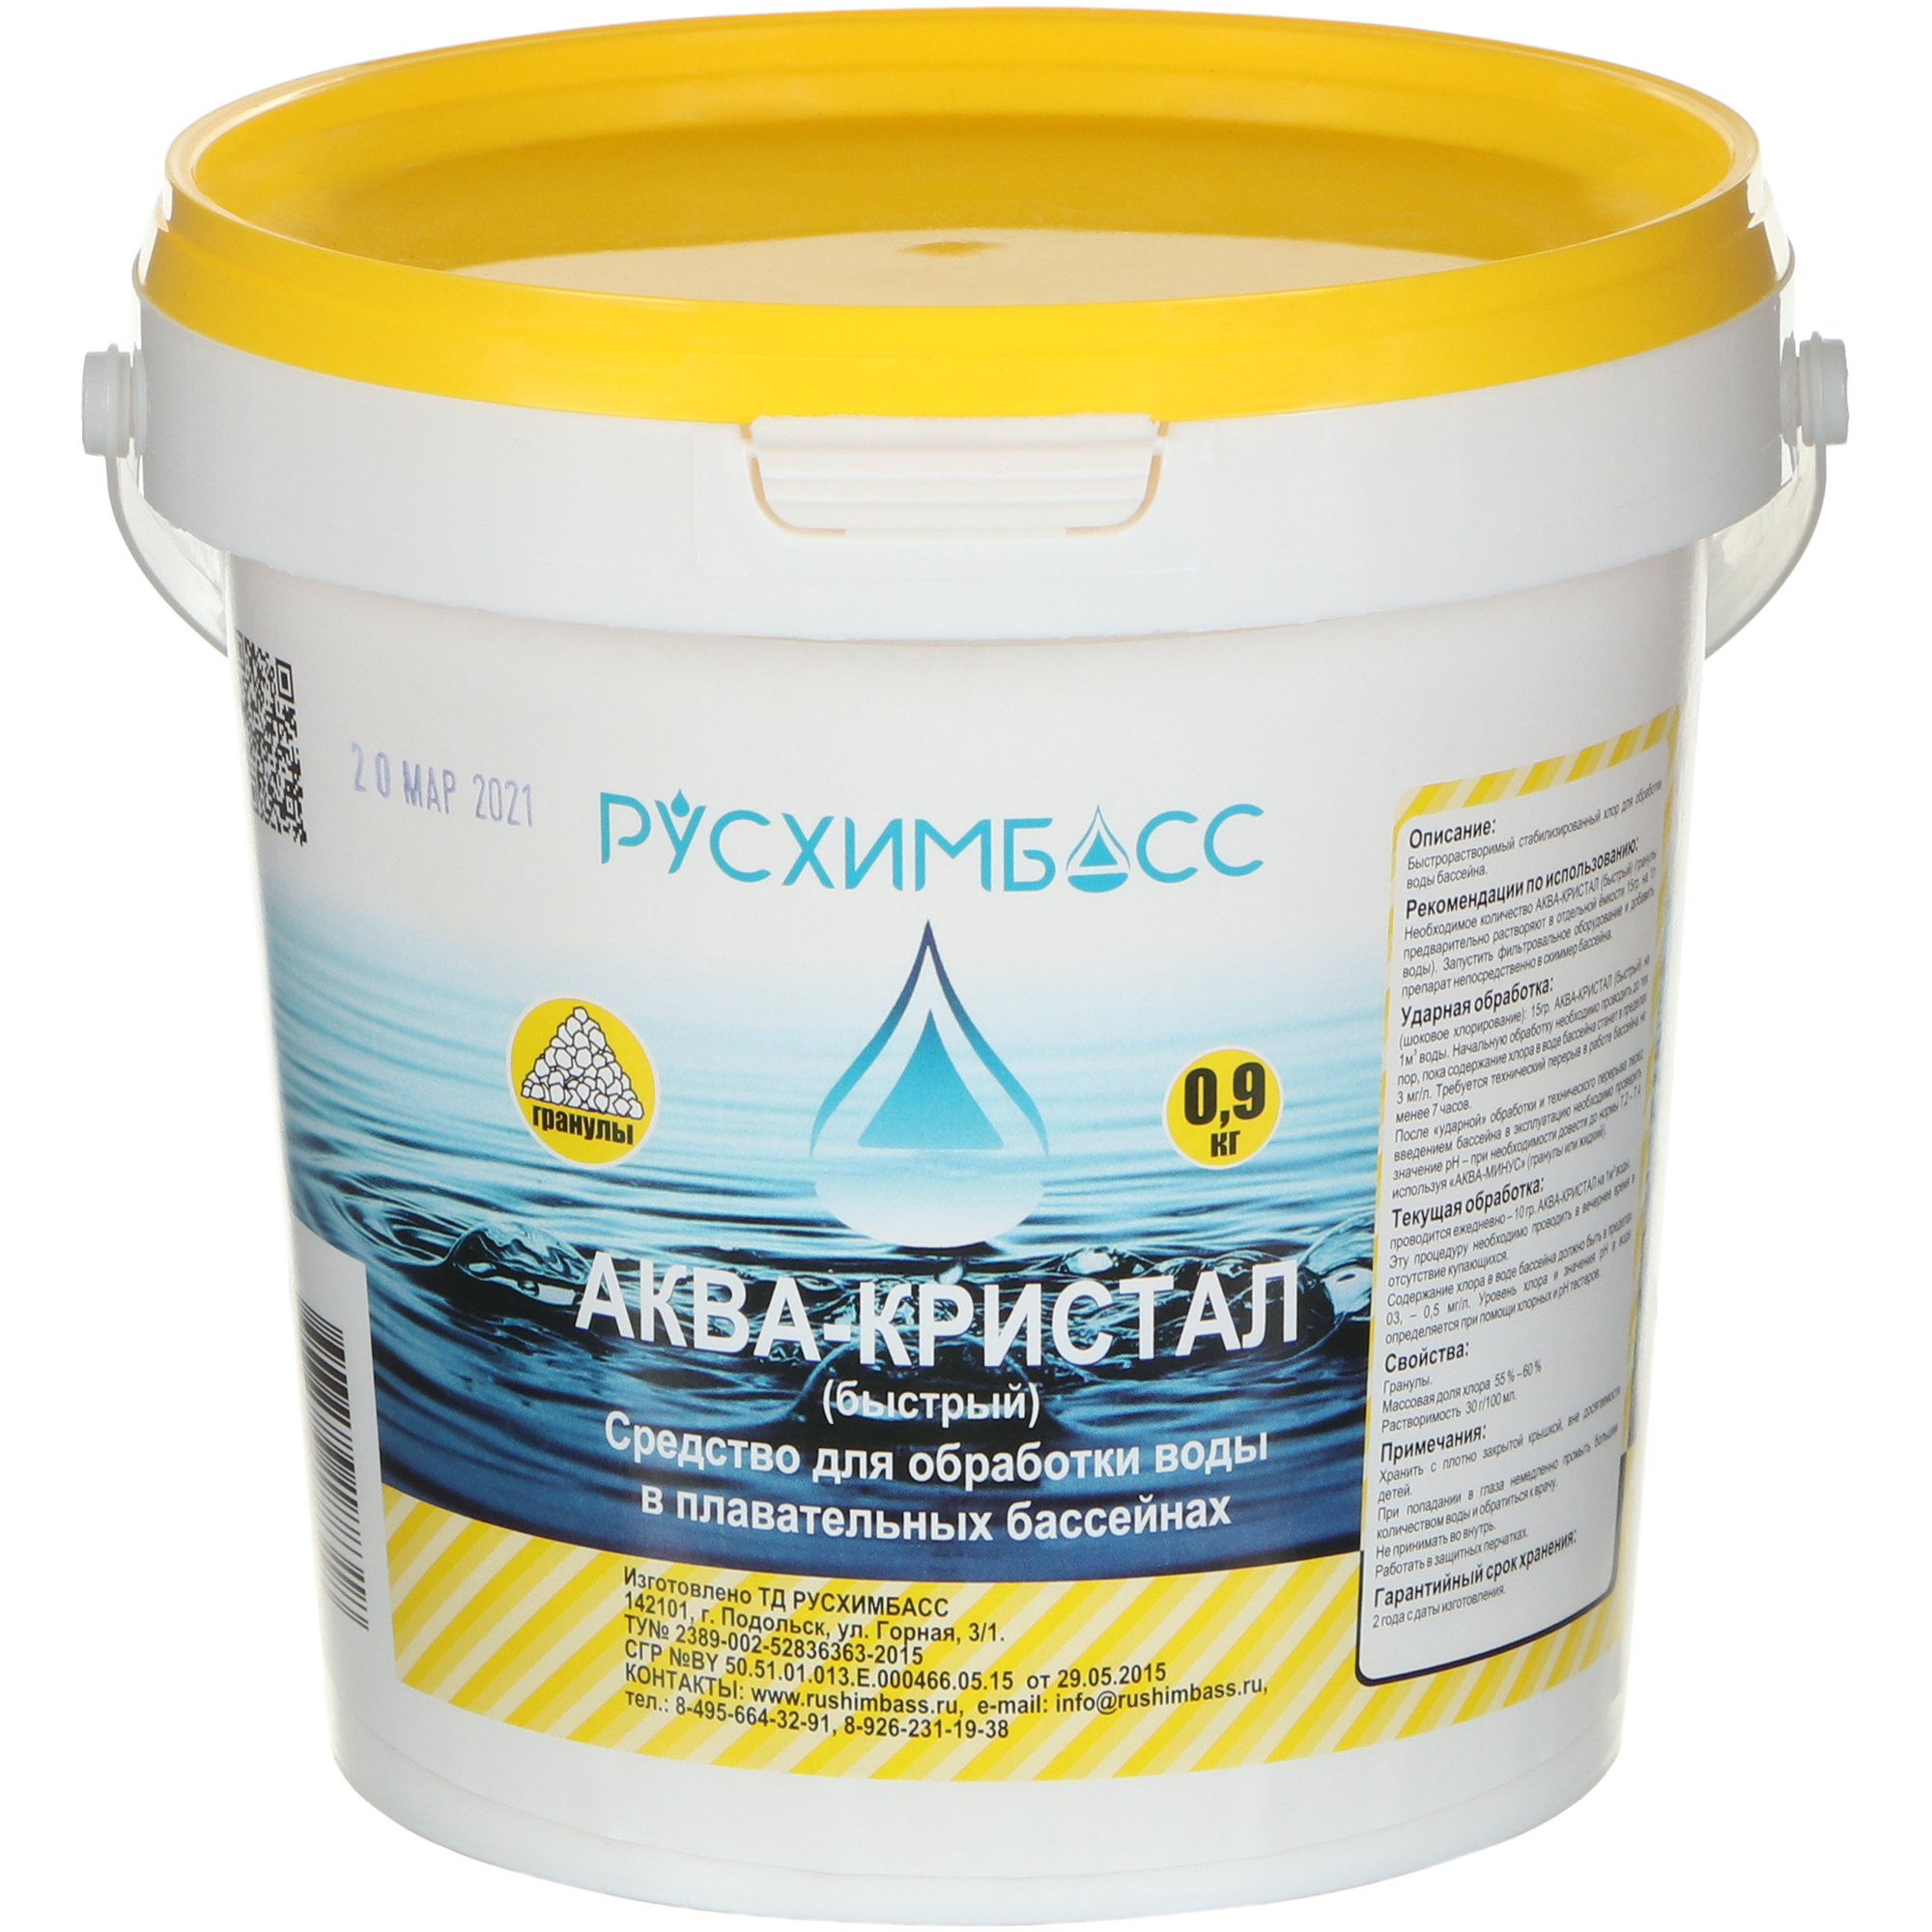 Средство для обработки воды в плавательных бассейнах Русхимбасс Аква-кристал(быстрый), гранулы, 0,9 кг средство для дезинфекции бассейна биобак гранулы